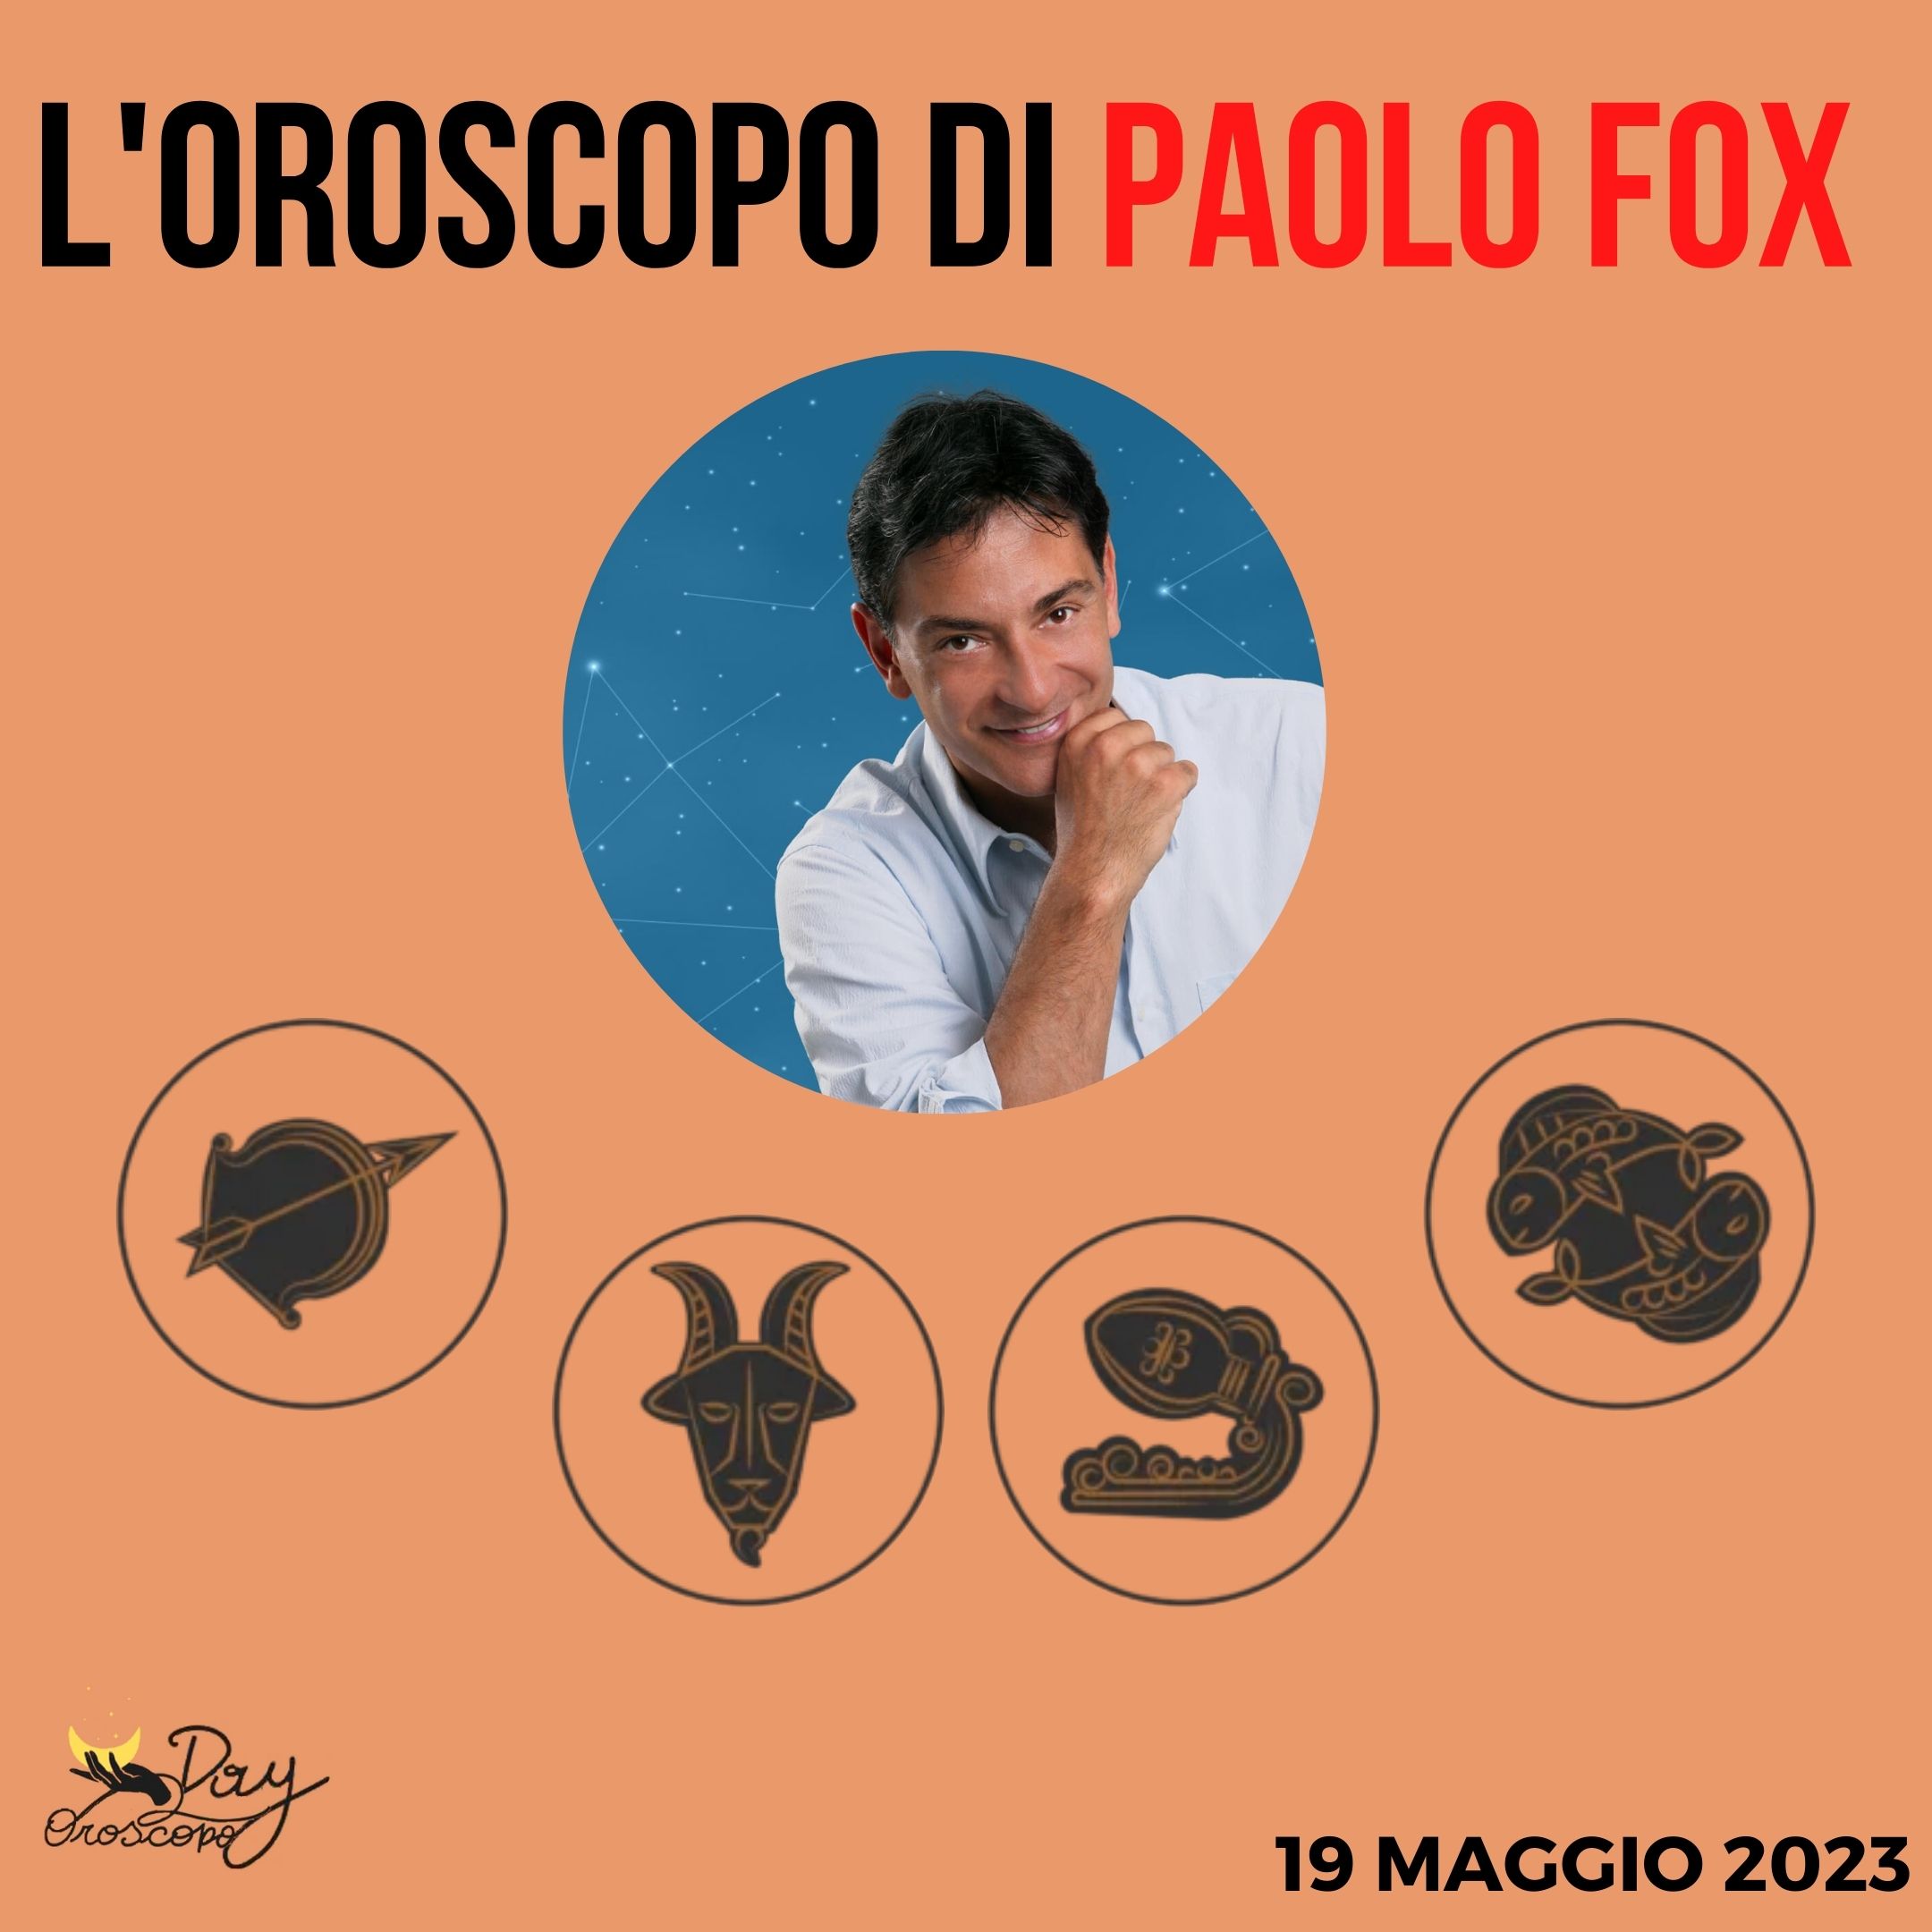 Oroscopo oggi domani Fox 19 maggio Sagittario Capricorno Acquario Pesci